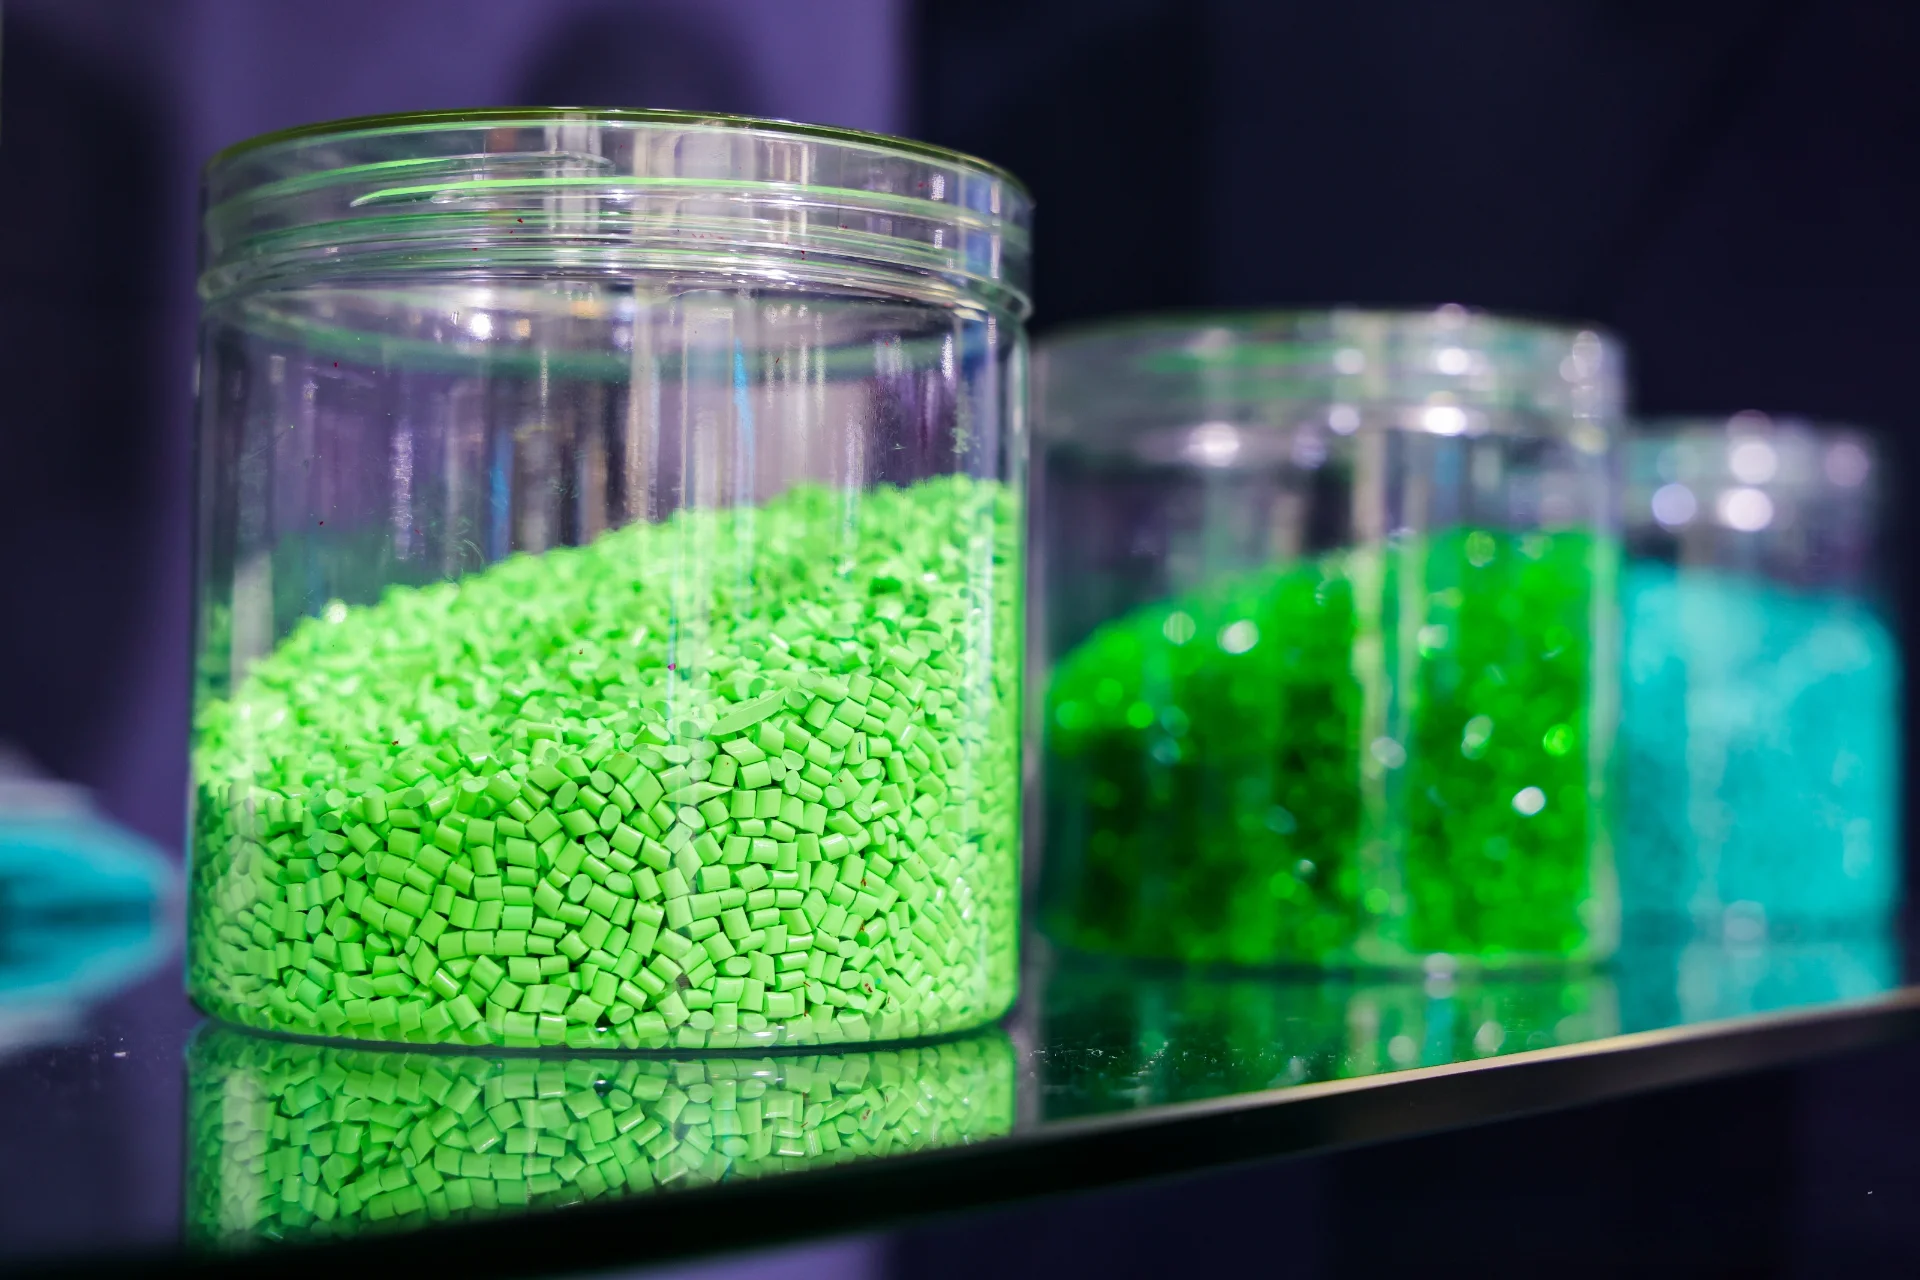 Obrázek ukazuje detailní záběr tří skleněných nádob obsahujících barevné plastové granule. Sklenice v popředí je plná jasně zelených granulí, zatímco sklenice v pozadí obsahují různé odstíny zelených a modrých granulí. Tyto granule se obvykle používají jako surovina v plastikářském průmyslu pro výrobu různých plastových výrobků prostřednictvím procesů, jako je vstřikování a vytlačování.